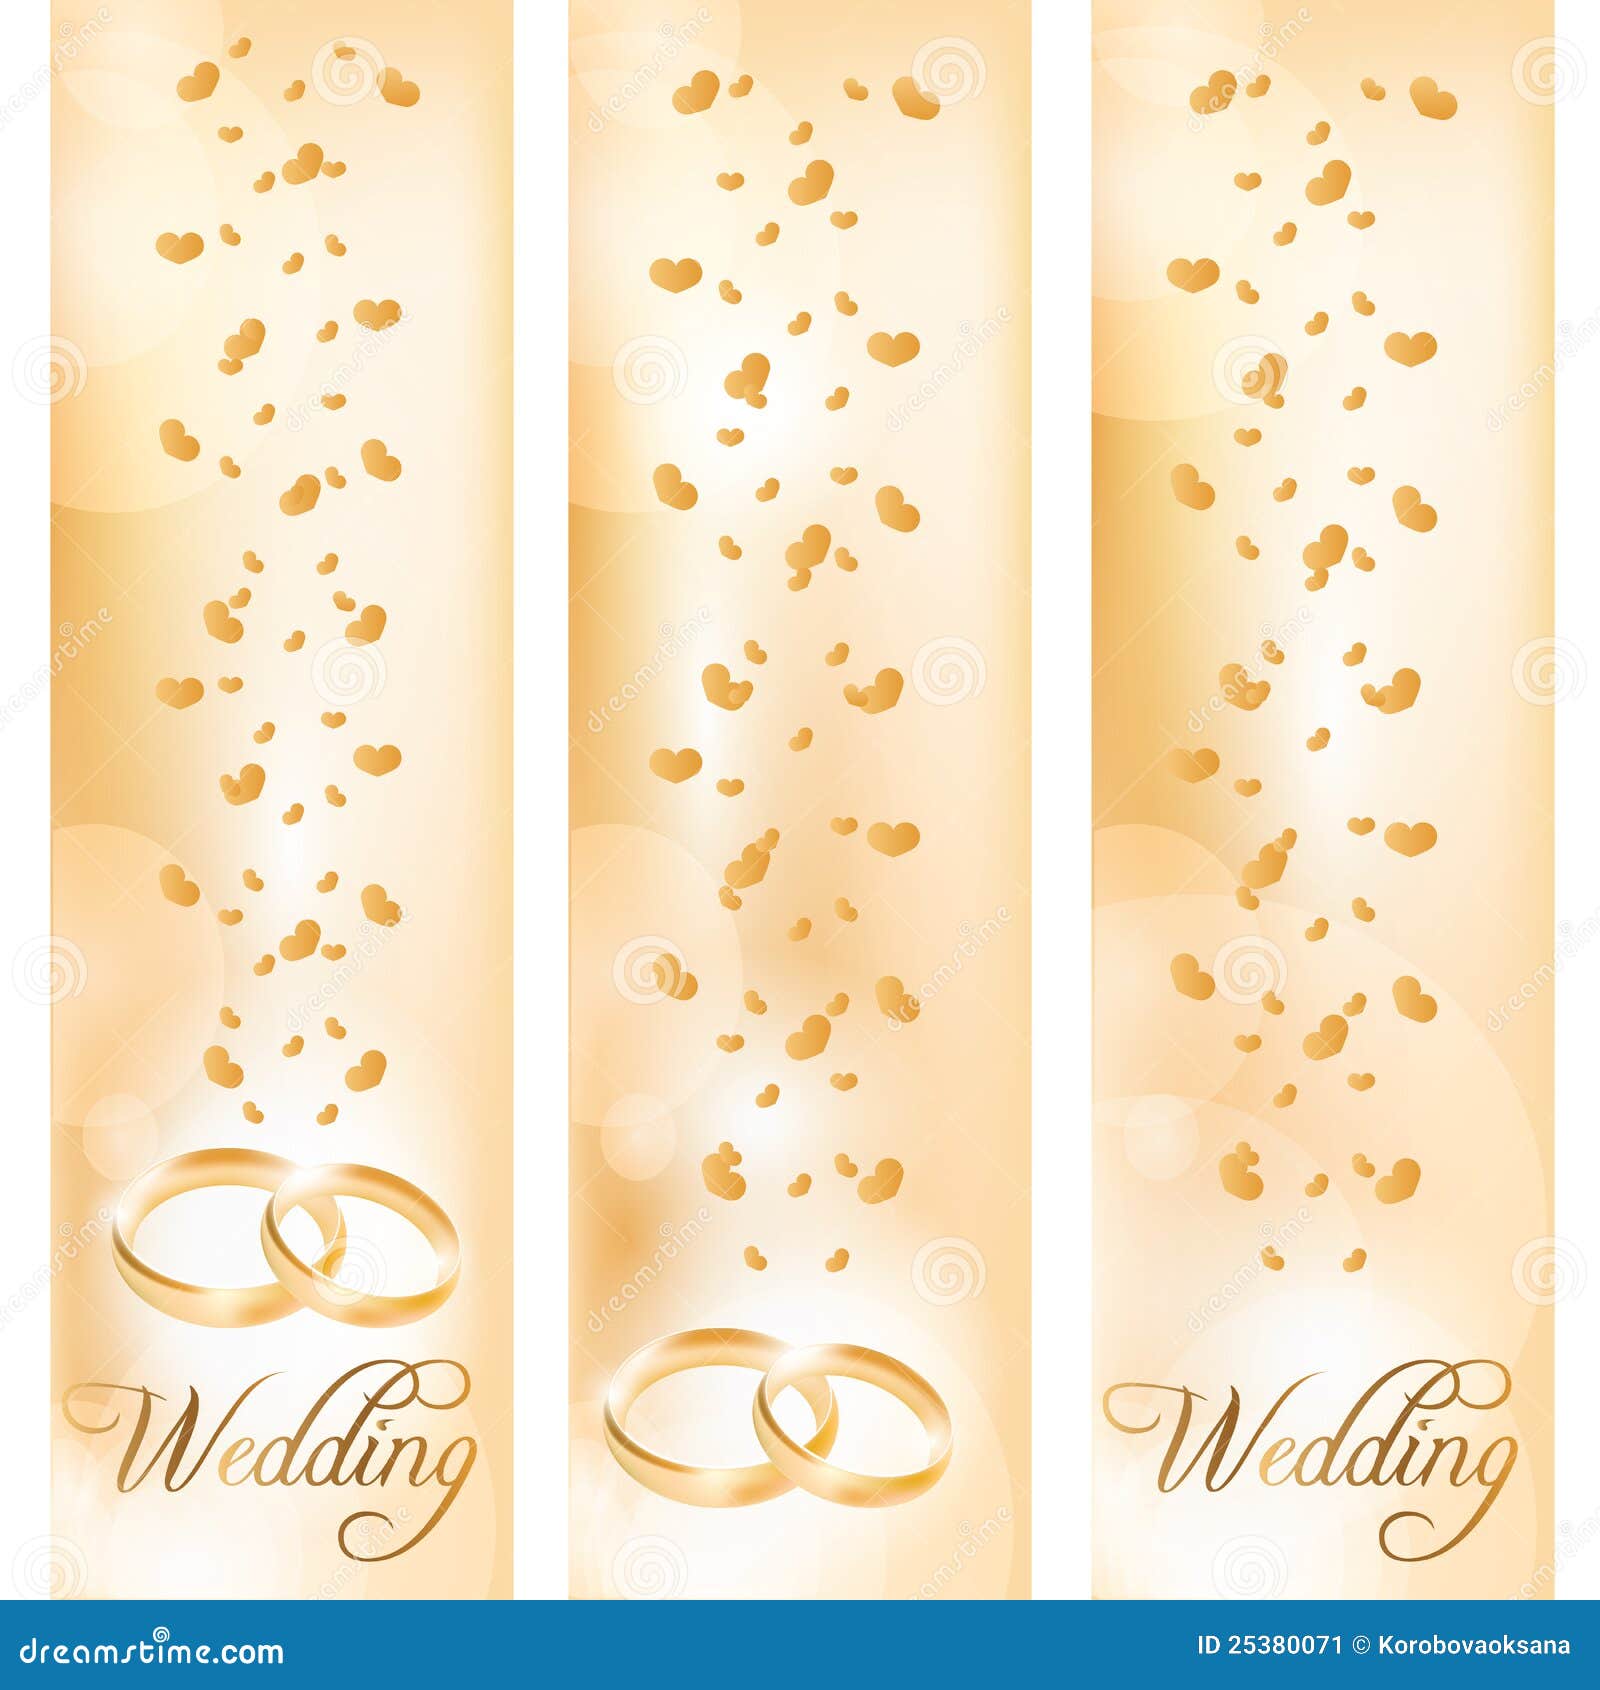 Tổng hợp 1000 Background X banner wedding Đẹp nhất, tải miễn phí